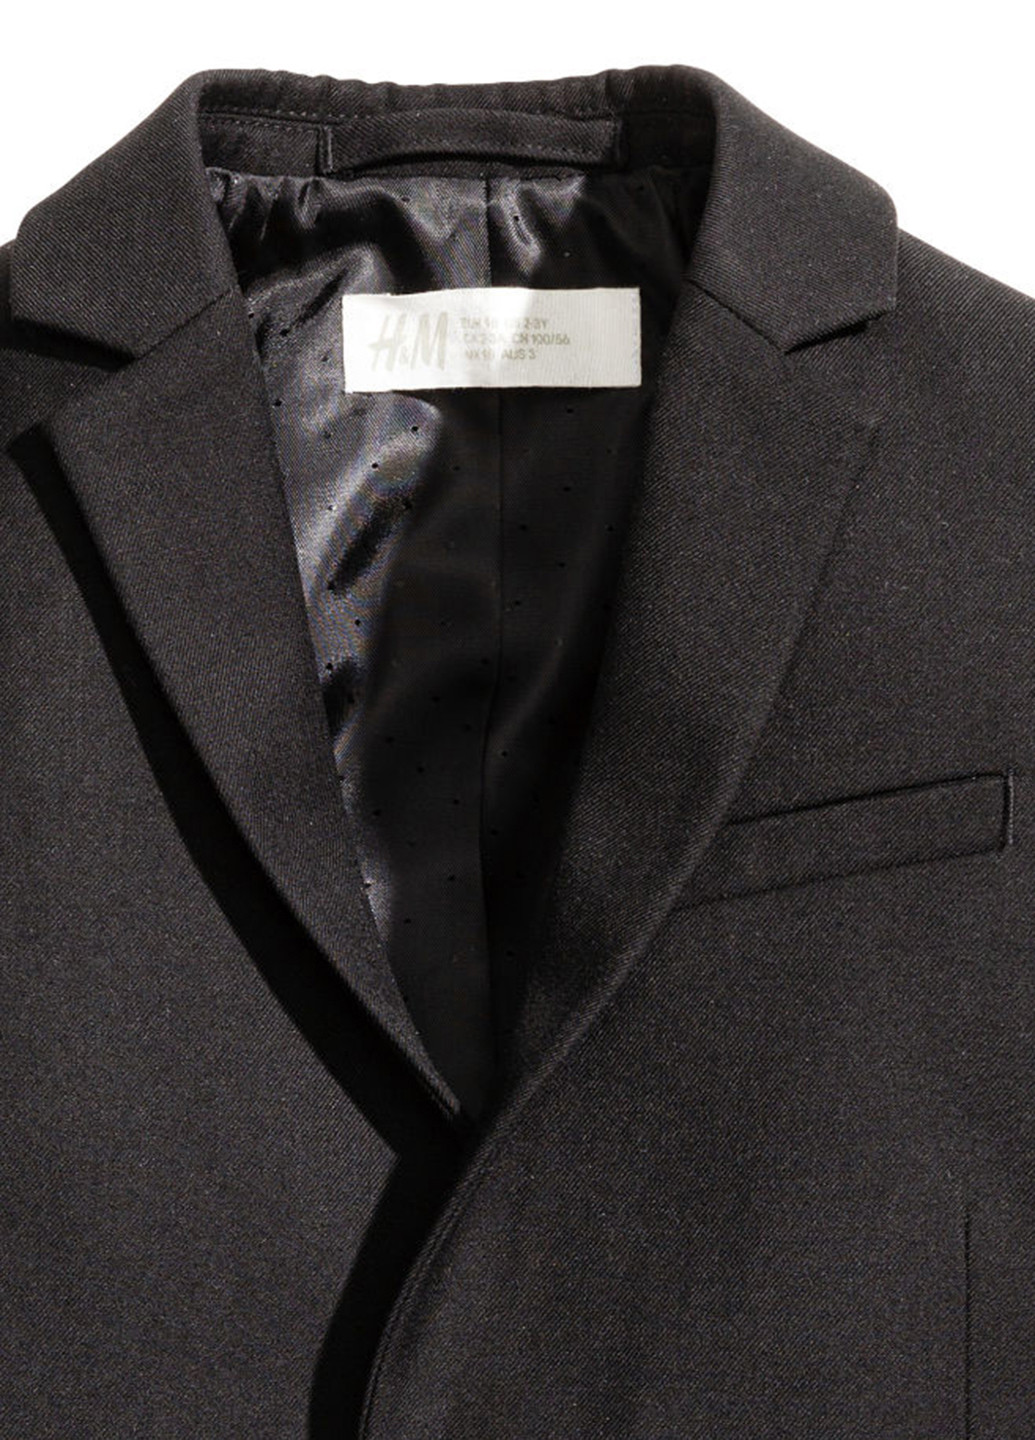 Піджак H&M з довгим рукавом однотонний чорний діловий